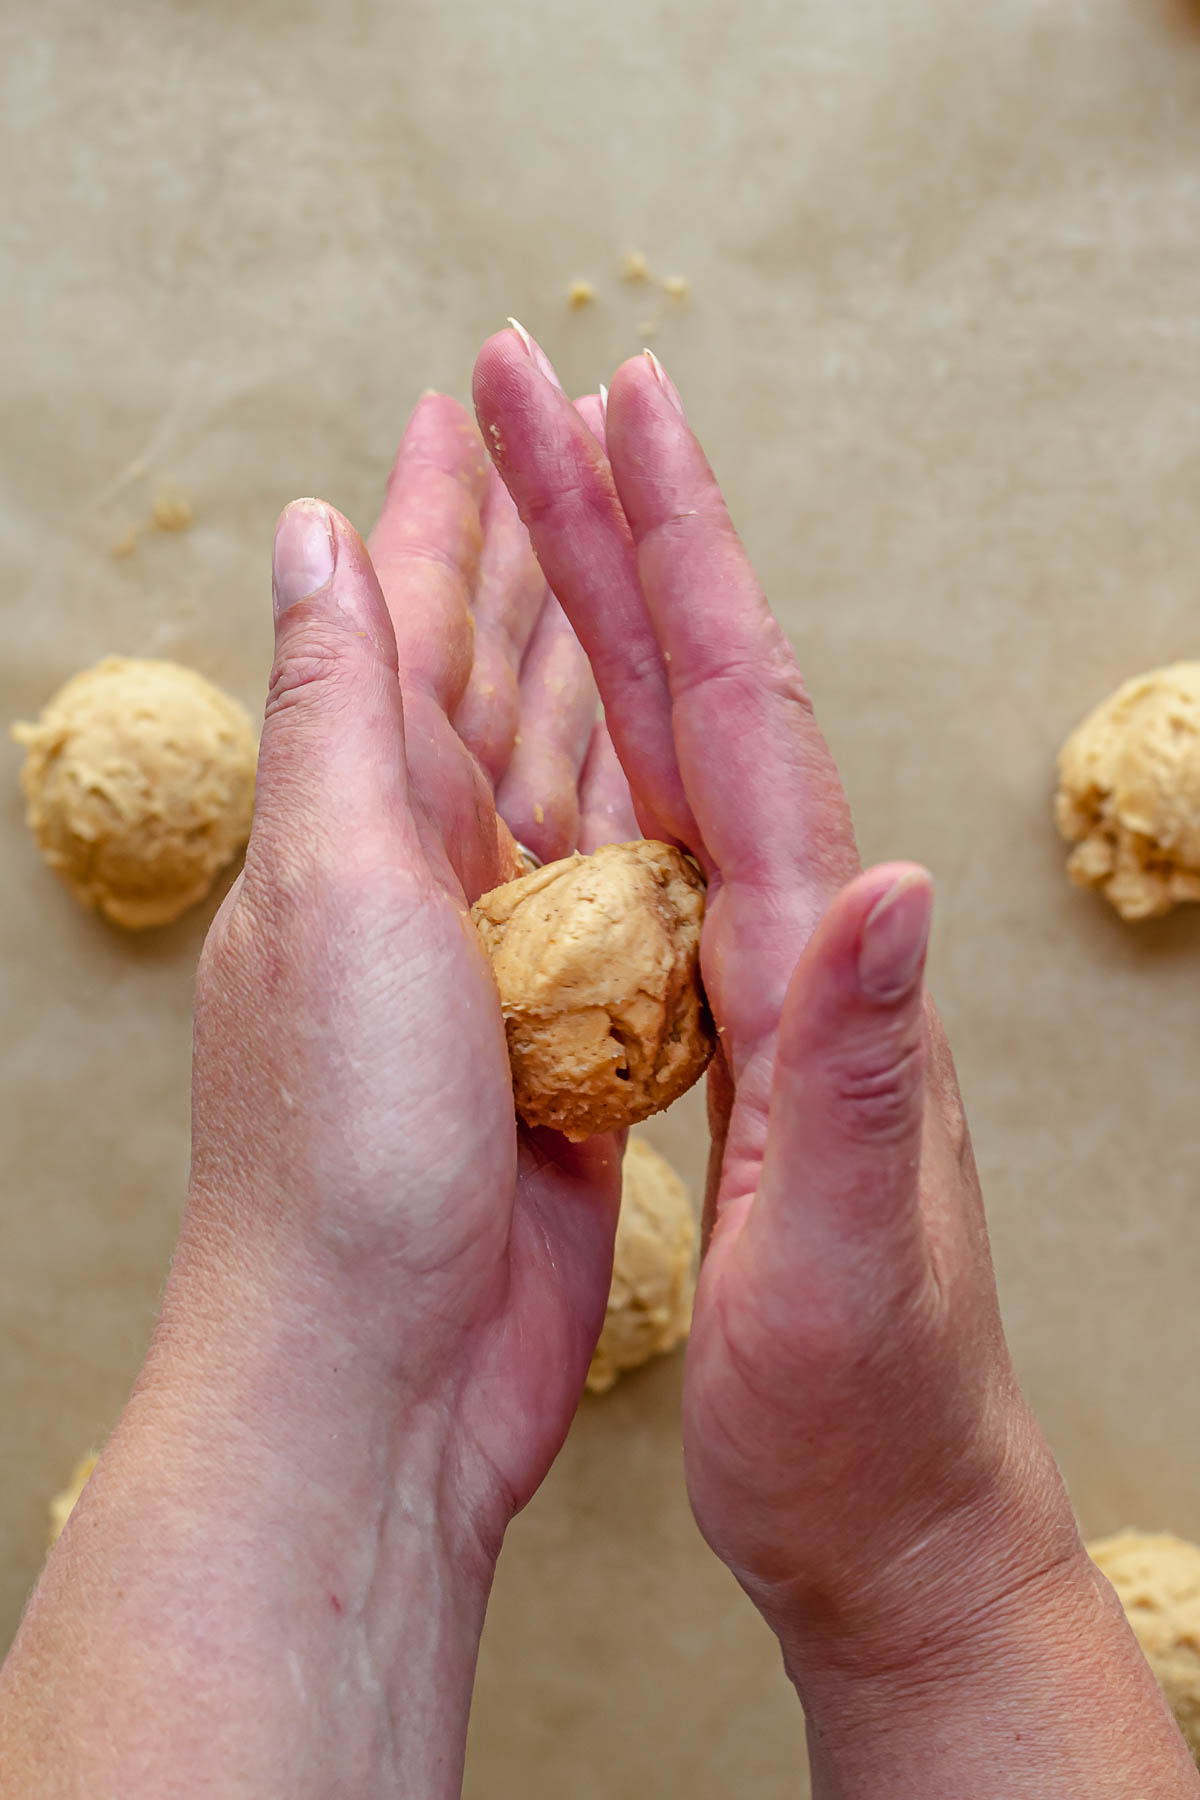 Hands rolling a pumpkin cookie dough into a ball.